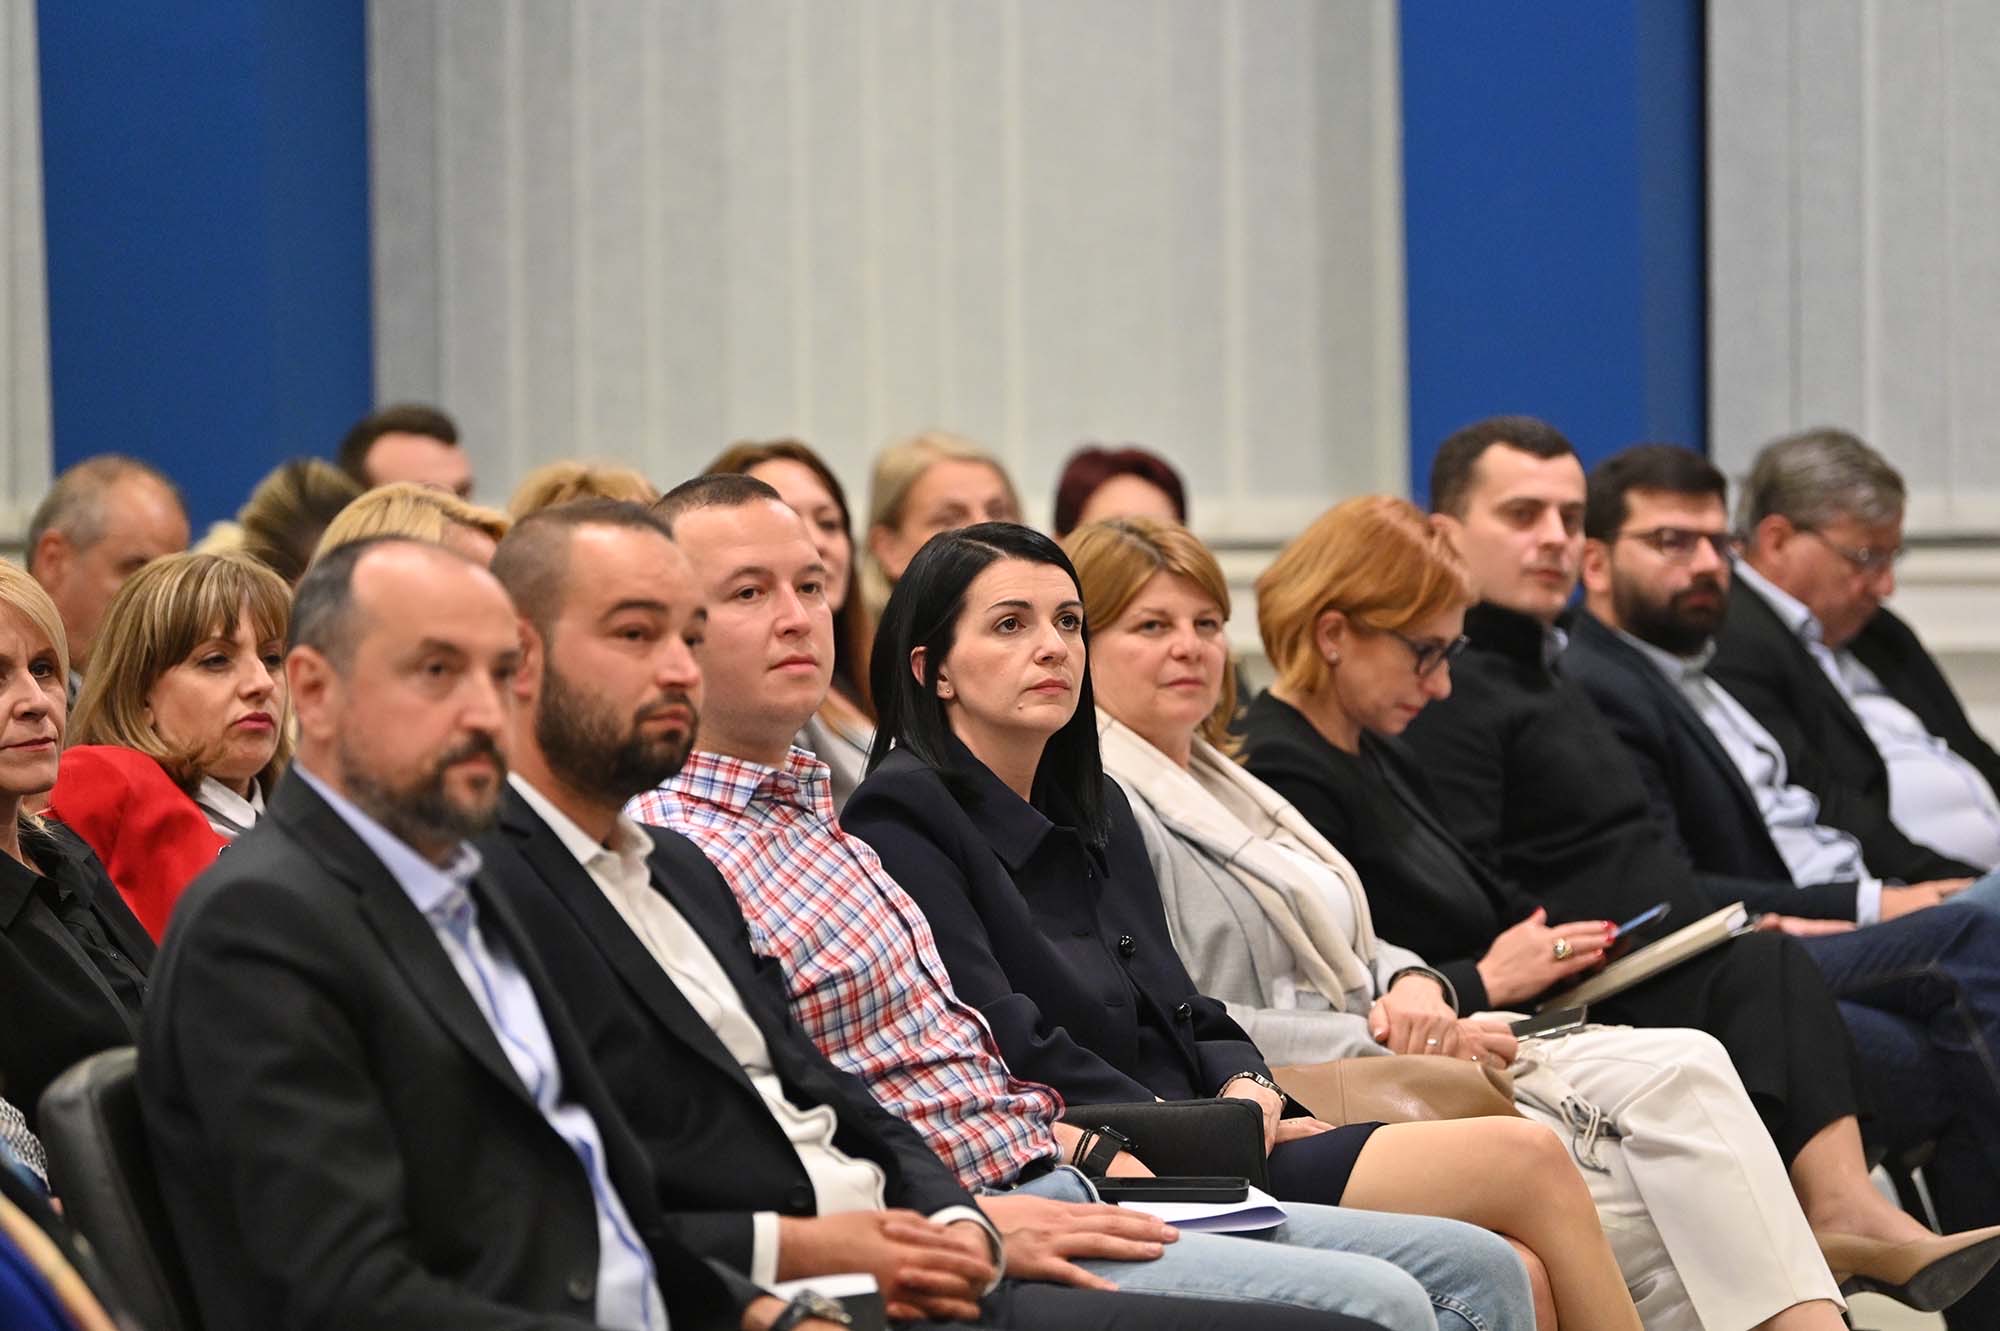 Ковачевски на ЦО на СДСМ: ВМРО-ДПМНЕ треба да одлучи дали ќе се приклучи кон проевропскиот блок цела, или во делови